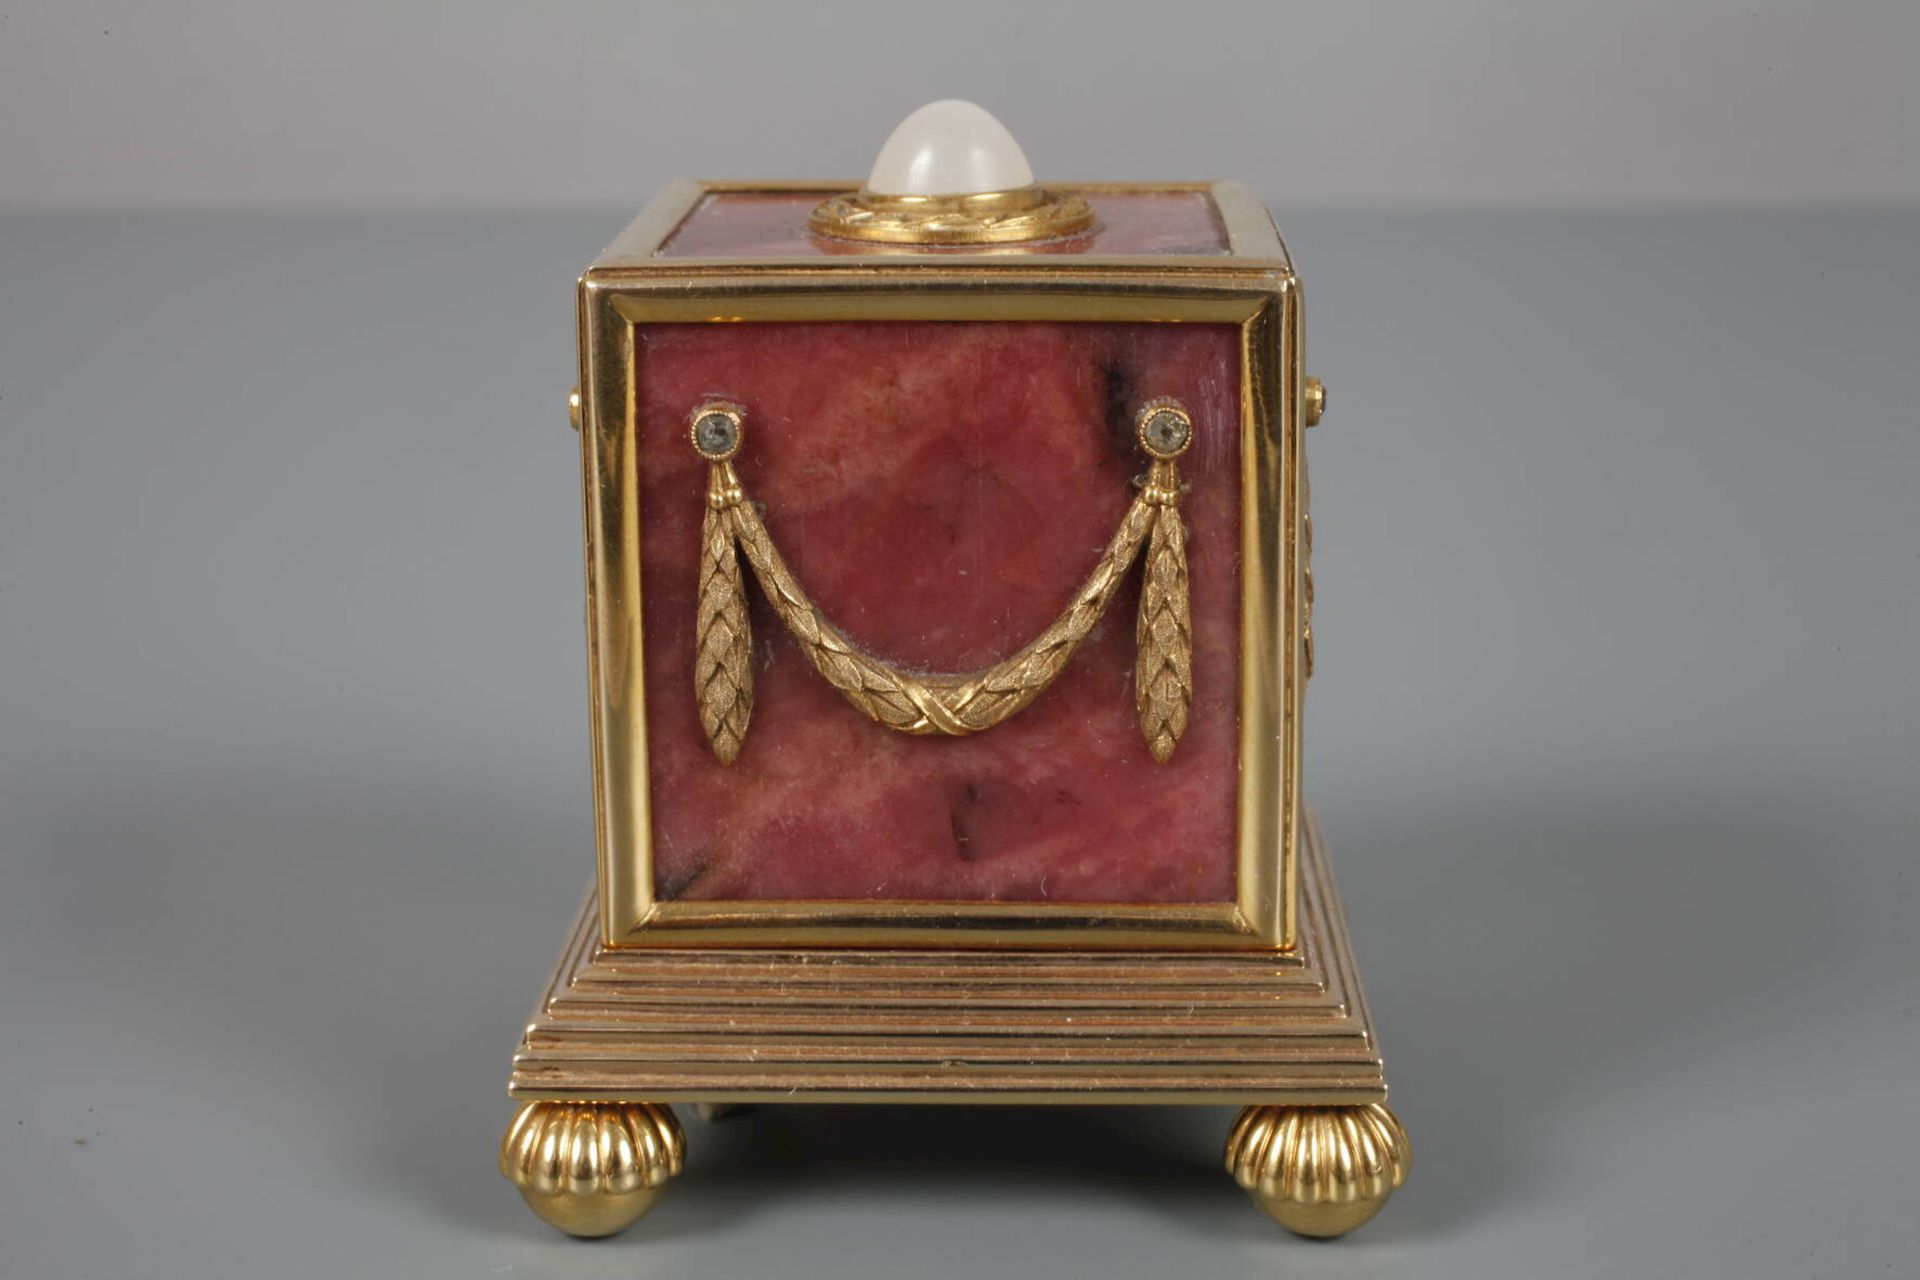 Tischklingel Goldwohl Fabergé, um 1910, am Boden eine sehr undeutliche winzige Punze, eventuell - Bild 5 aus 7